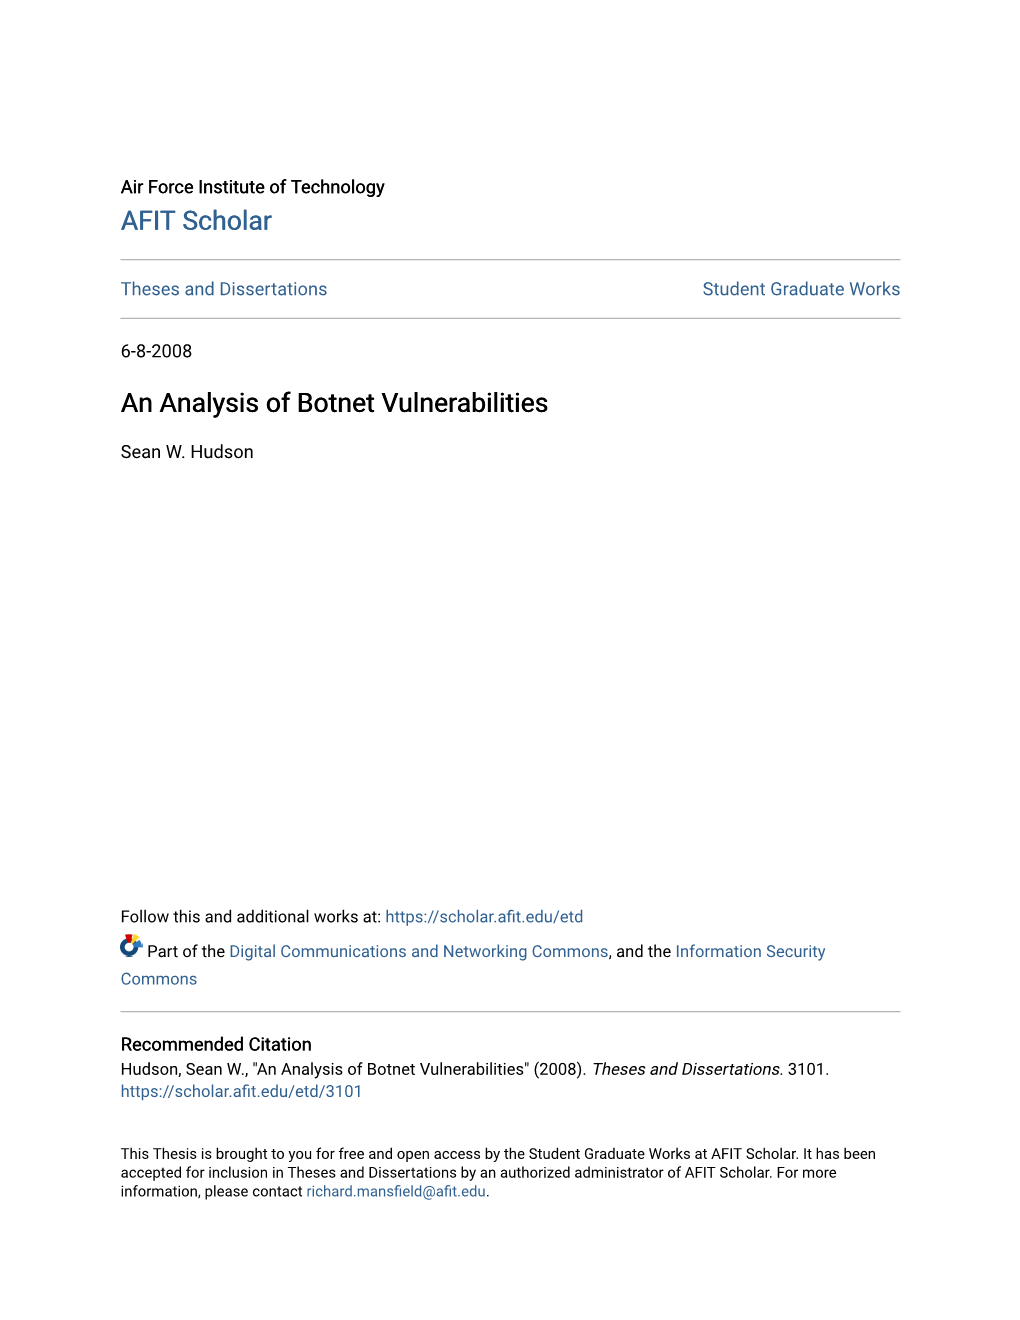 An Analysis of Botnet Vulnerabilities